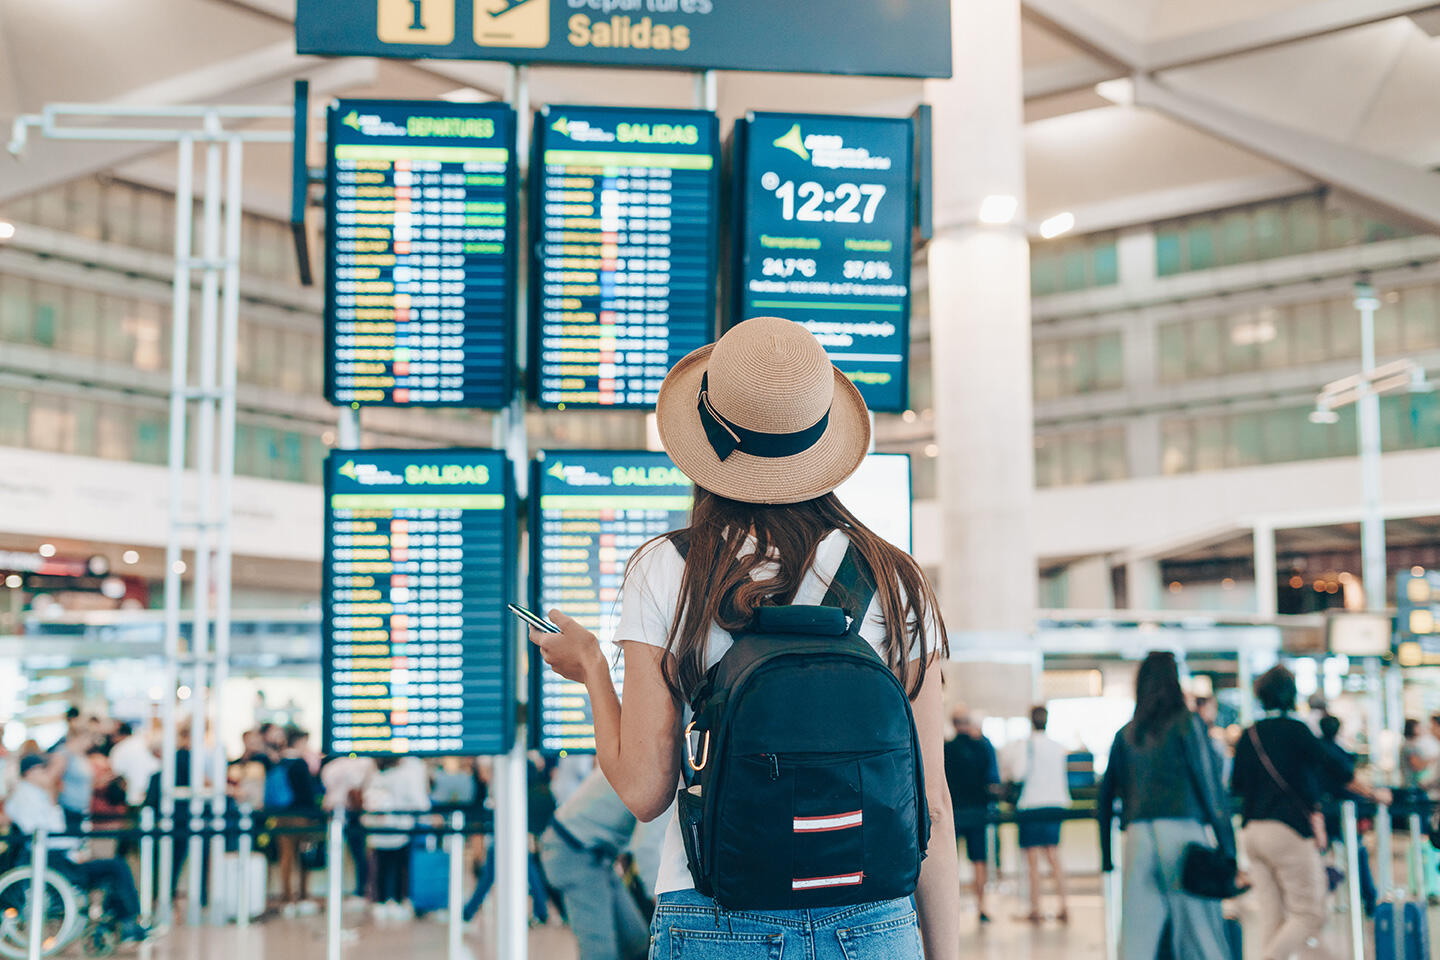 Mujer de espaldas con sombrero y mochila consultando su teléfono frente al tablón de salidas del aeropuerto de Burdeos.